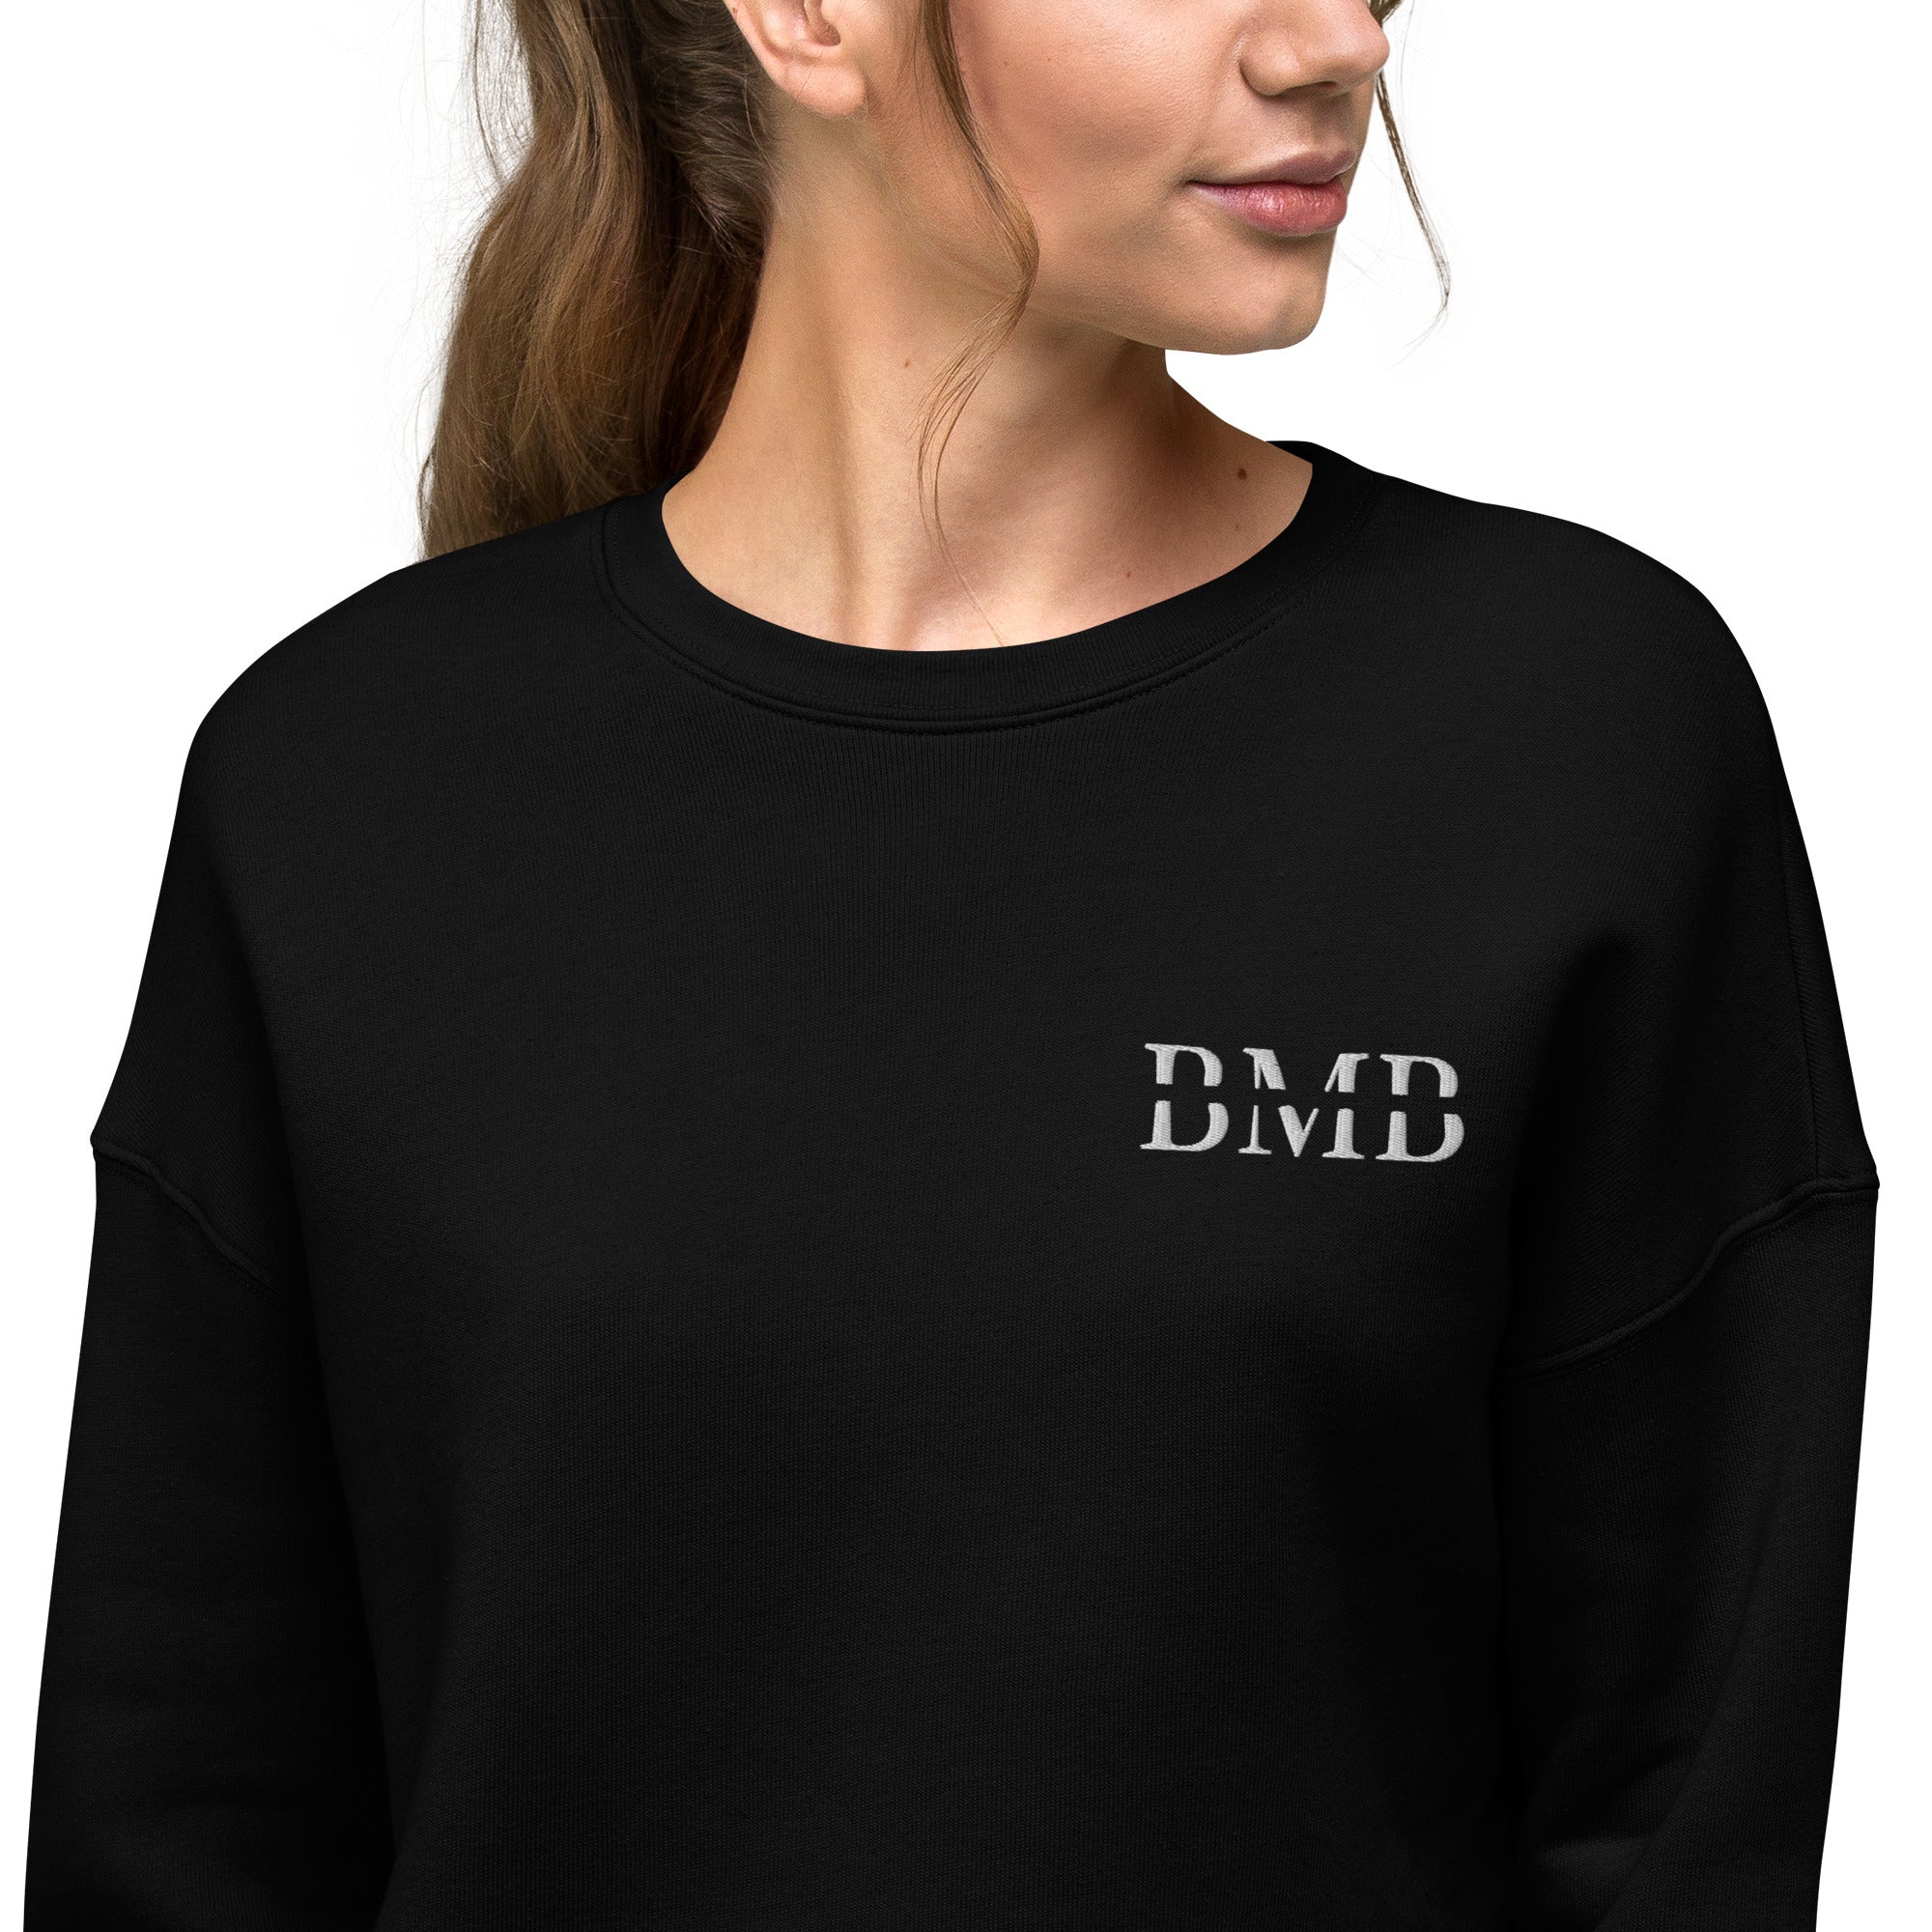 BMB Sweatshirt – BLACKMARKET